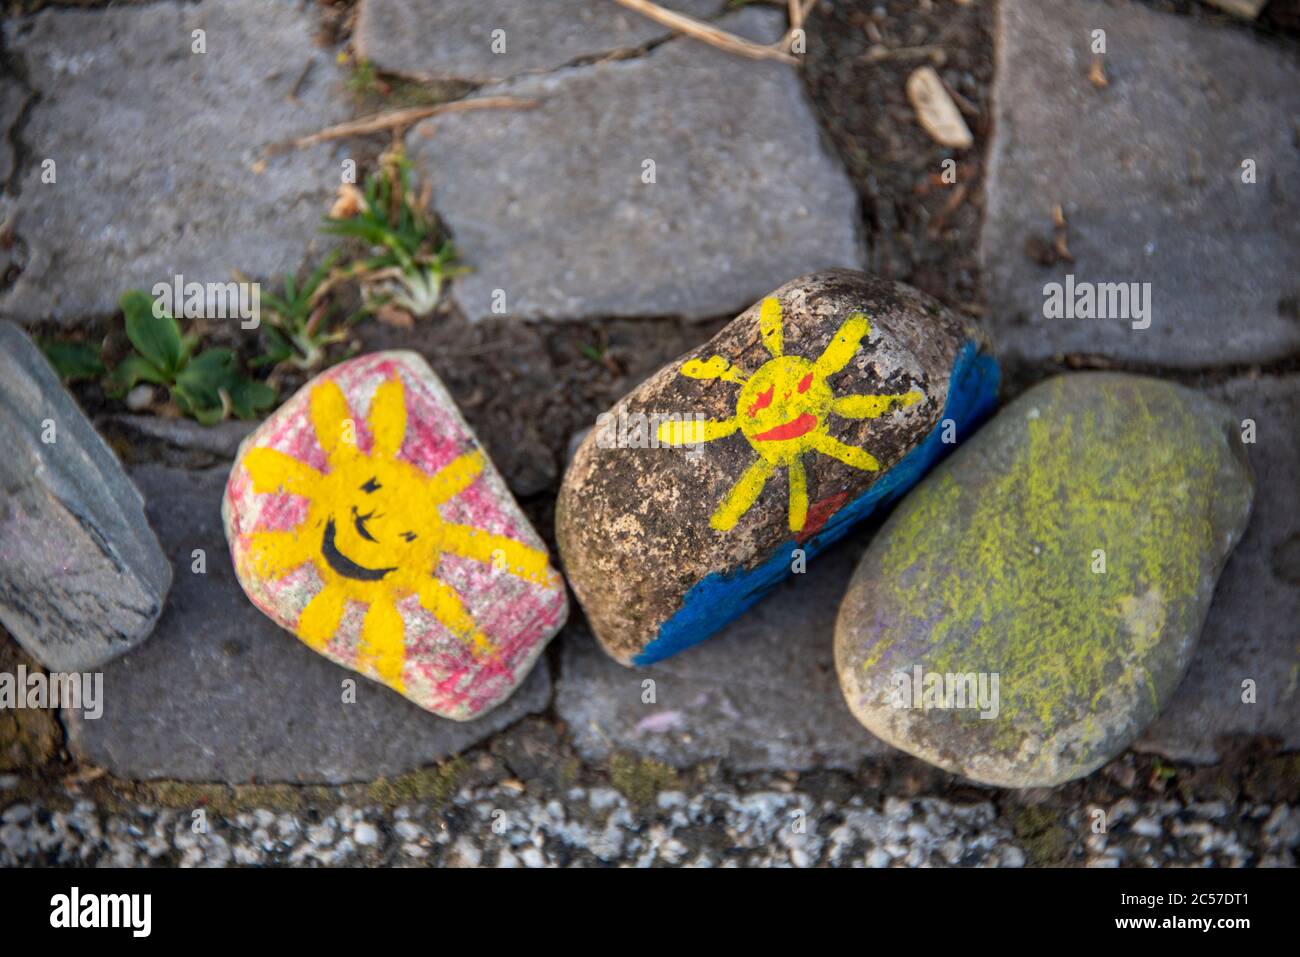 Allemagne, Saxe-Anhalt, Magdebourg: Devant la garderie Pinocchio sont des pierres colorées avec des soleils jaunes. Ils symbolisent l'espoir et la joie en diffic Banque D'Images